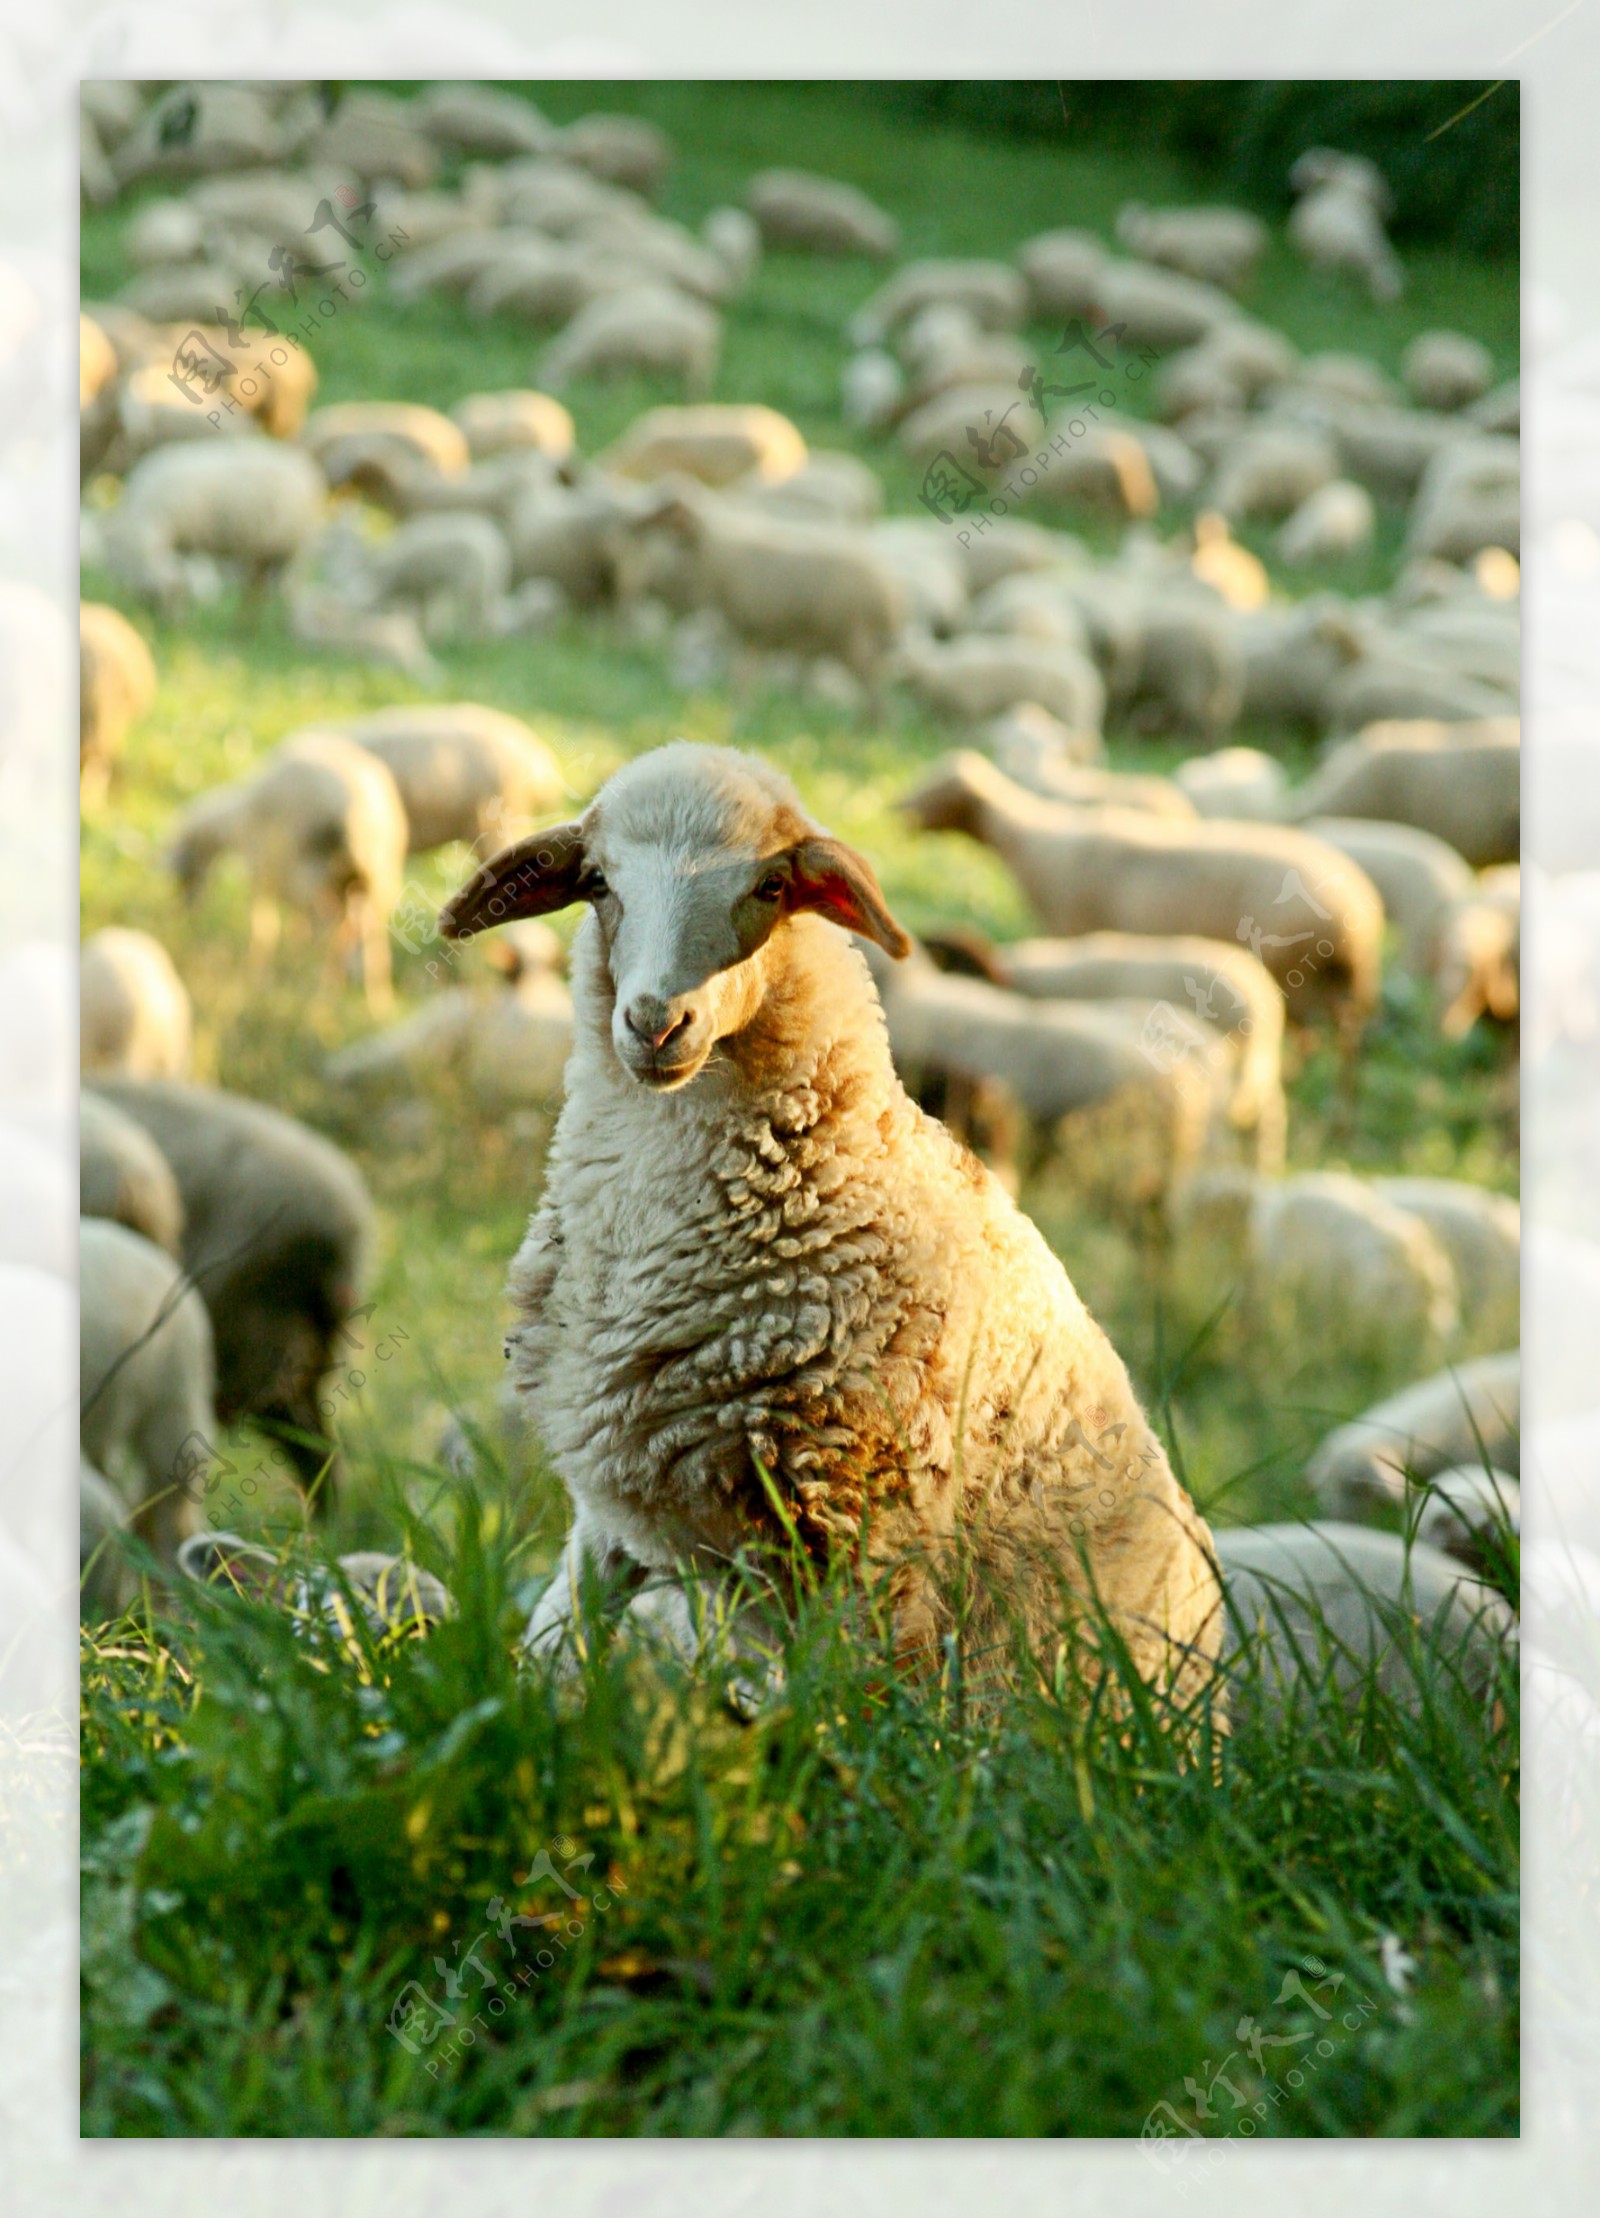 牧场羊群